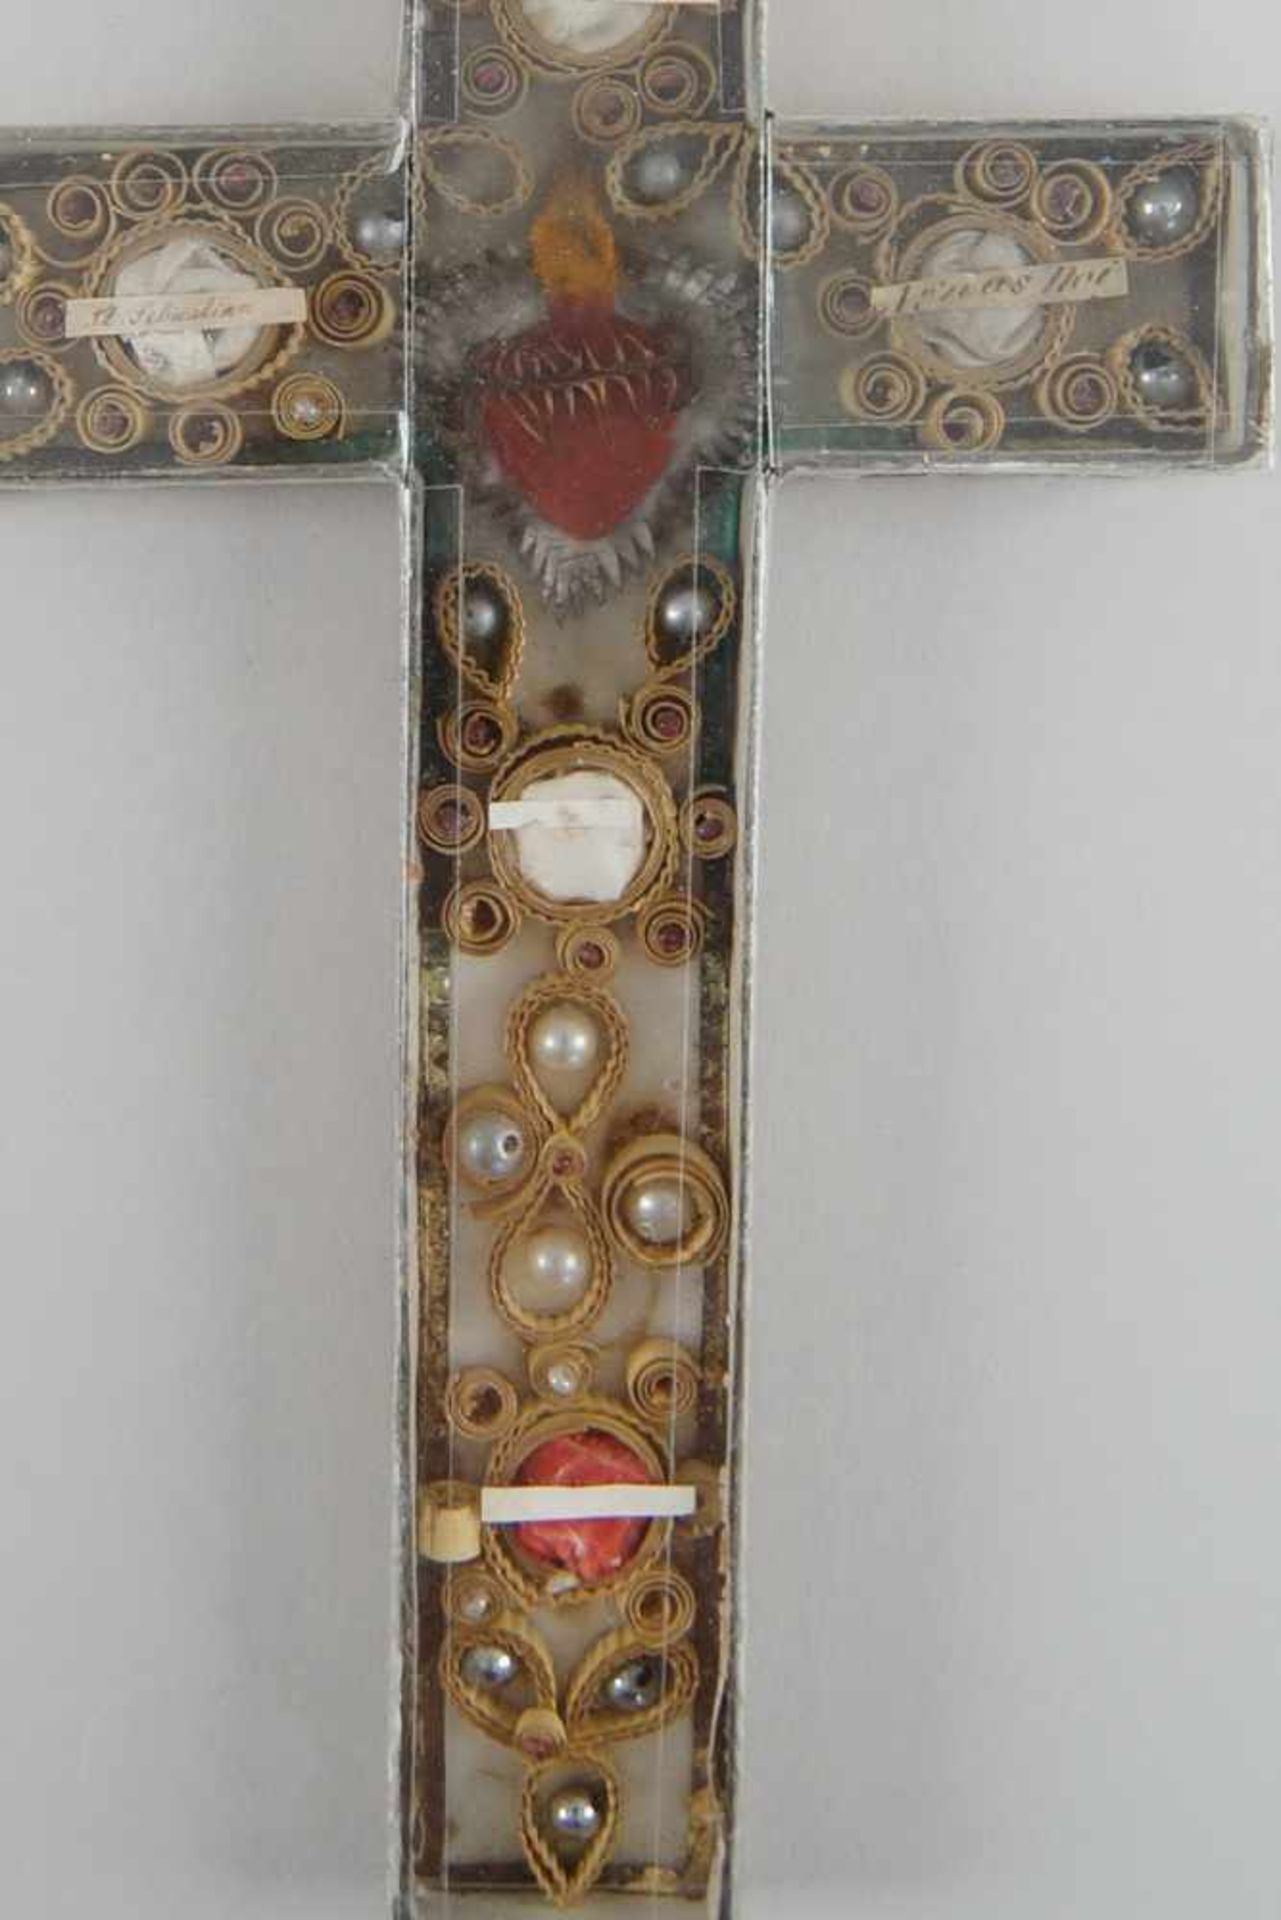 Feines Reliquienkreuz/Klosterarbeit hinter Glas, 20x12,5cm- - -24.00 % buyer's premium on the hammer - Bild 3 aus 6